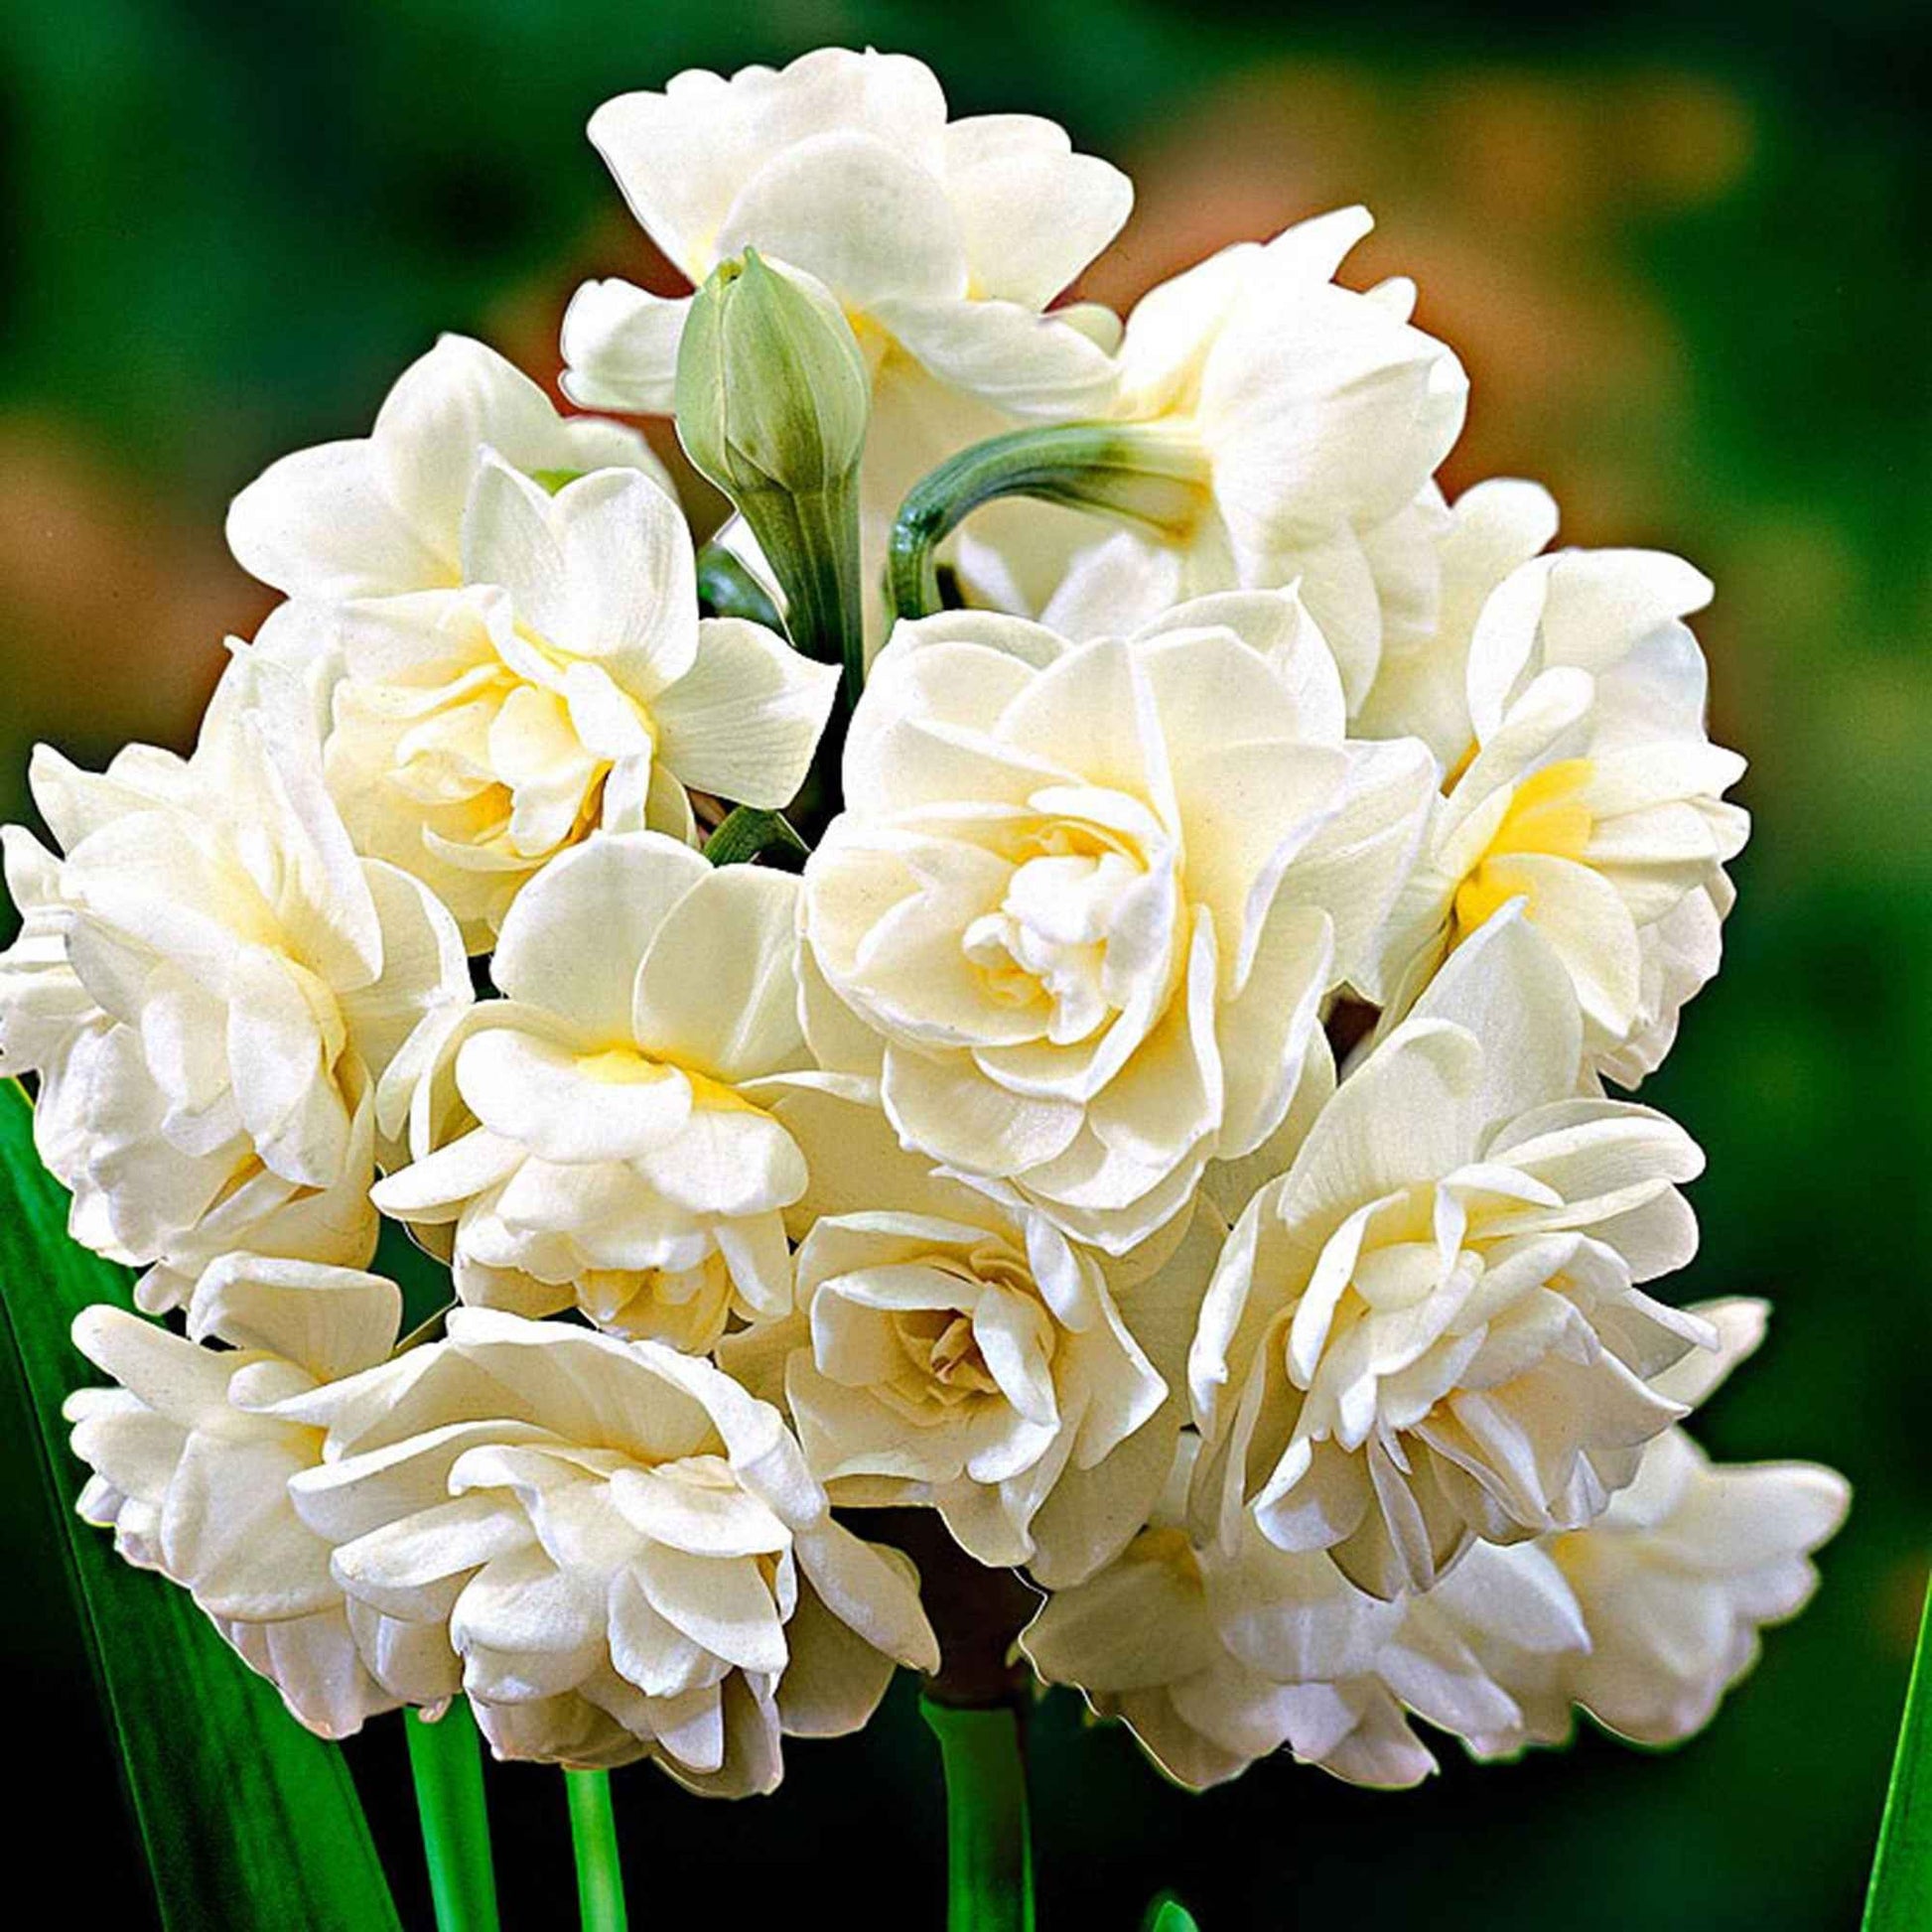 5x Narcisse 'Erlicheer' blanc - Bulbes de fleurs par catégorie